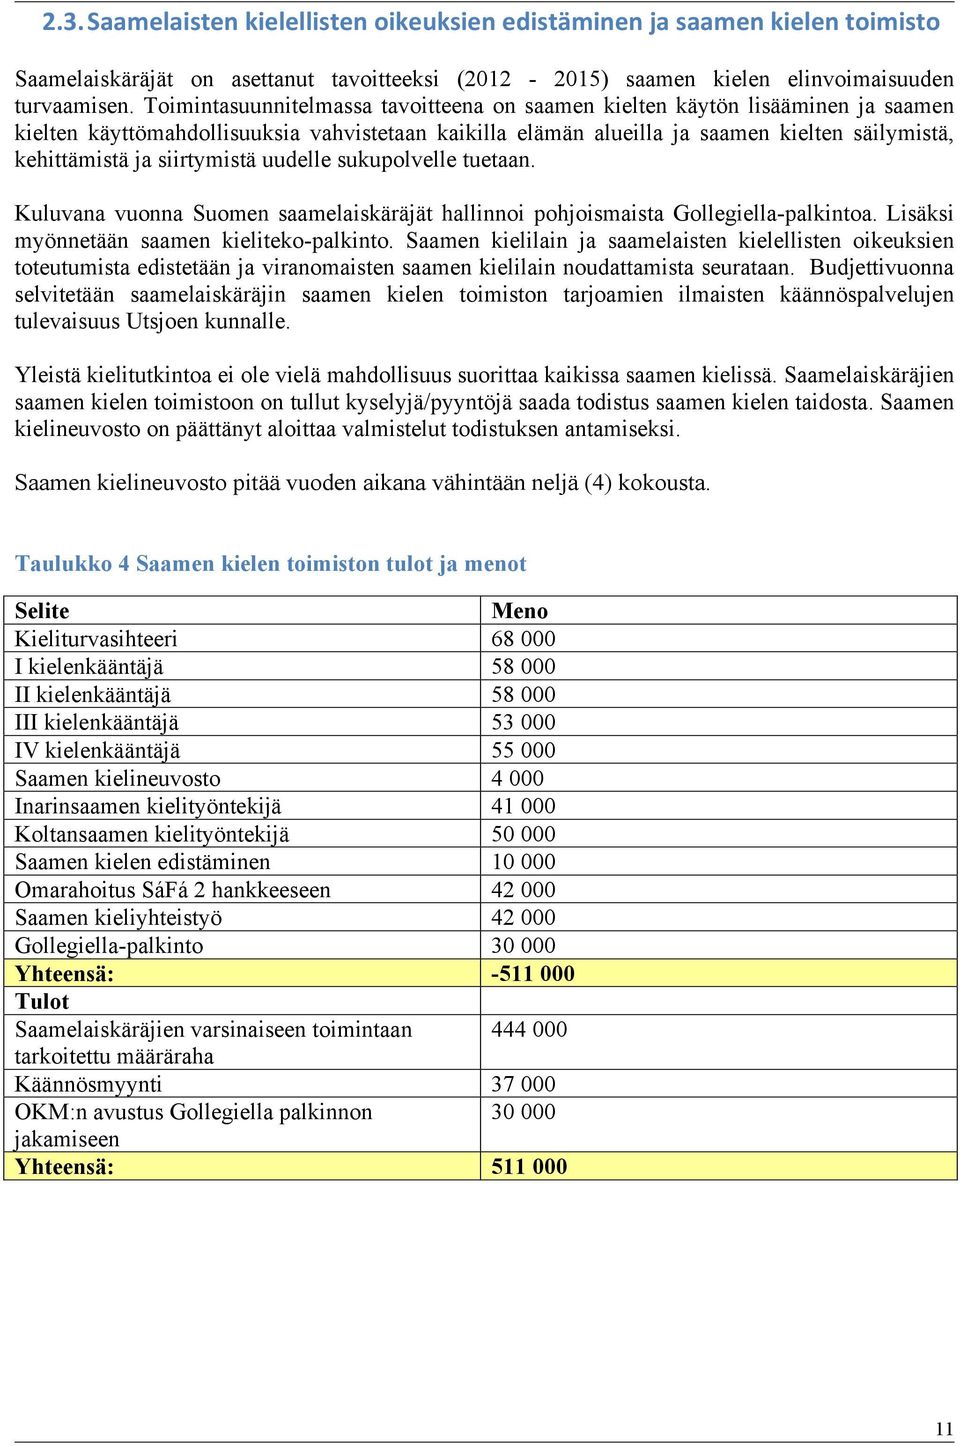 siirtymistä uudelle sukupolvelle tuetaan. Kuluvana vuonna Suomen saamelaiskäräjät hallinnoi pohjoismaista Gollegiella-palkintoa. Lisäksi myönnetään saamen kieliteko-palkinto.